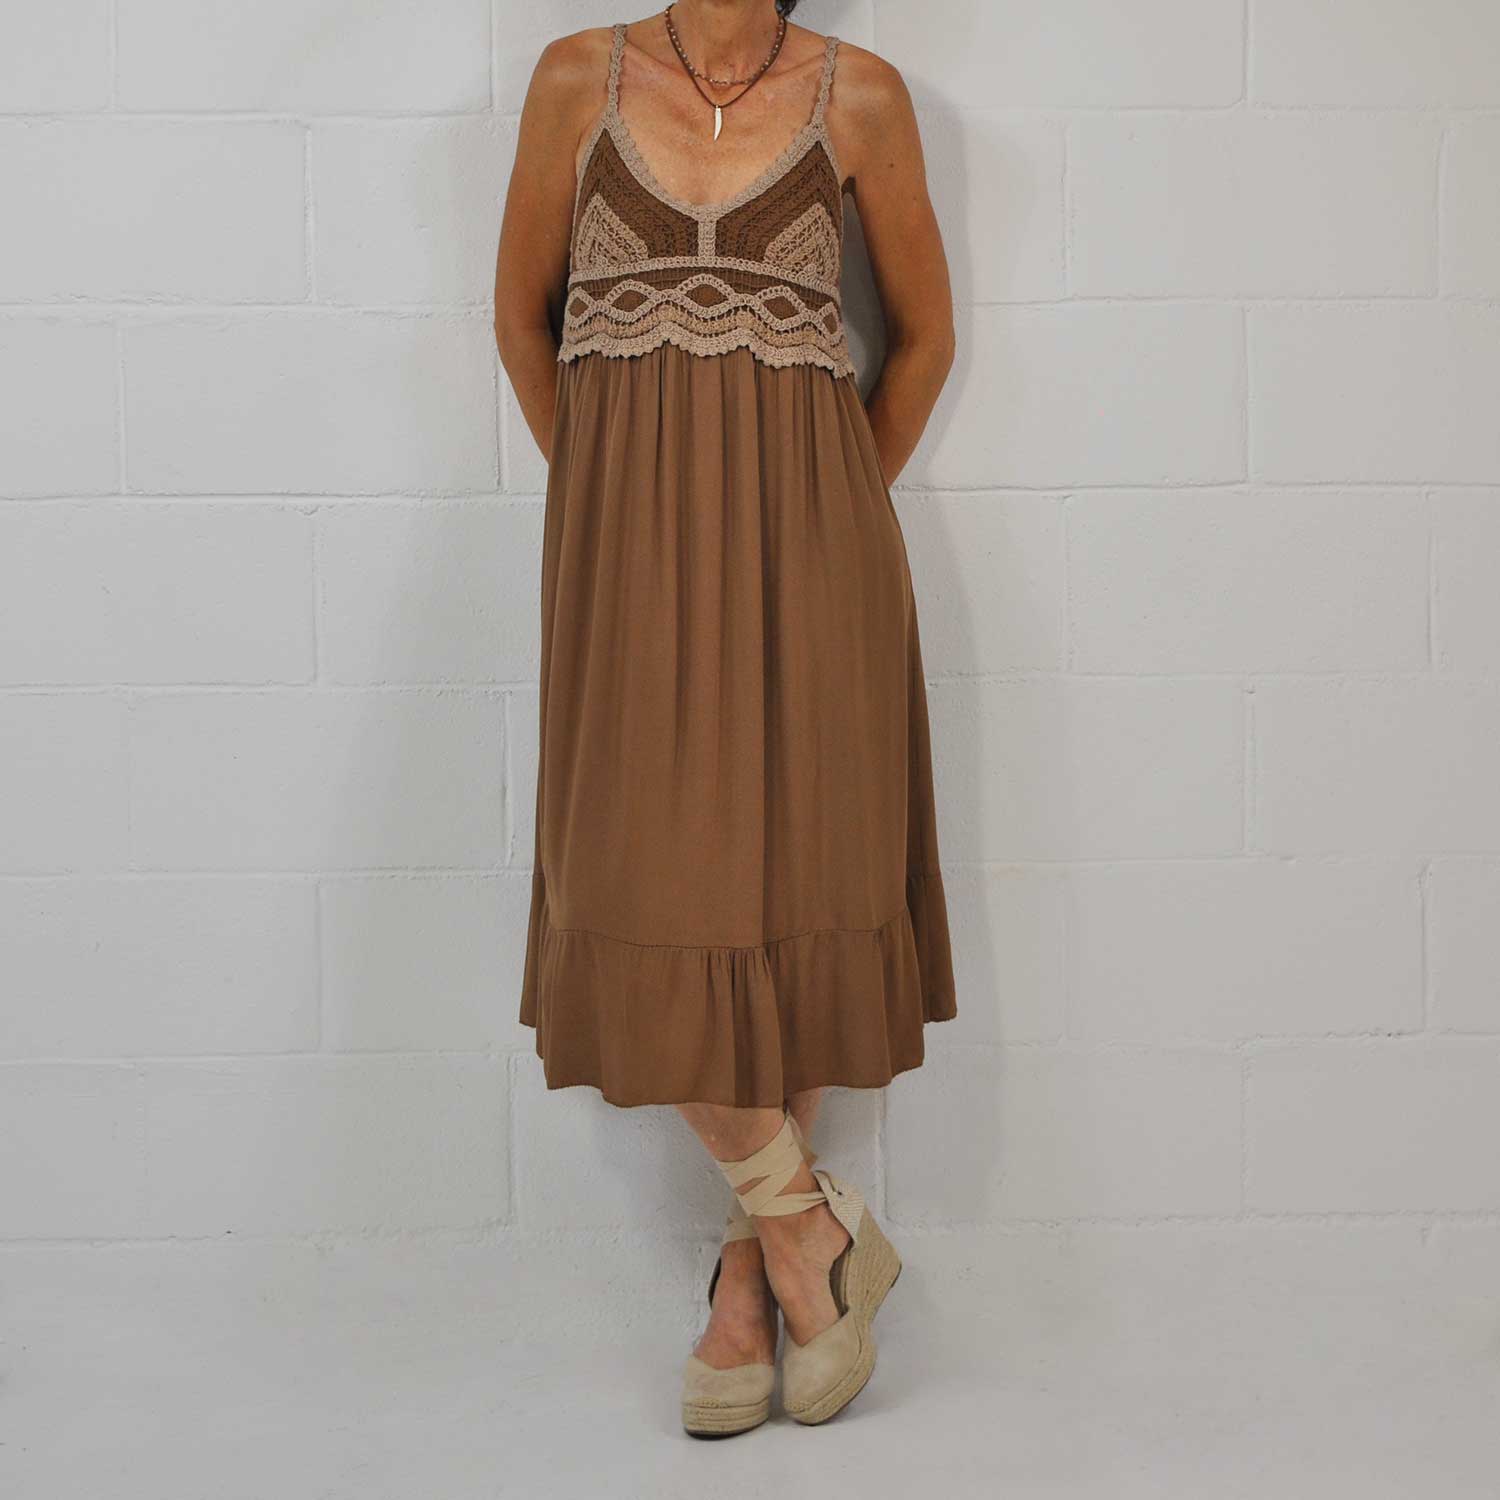 Brown crochet dress